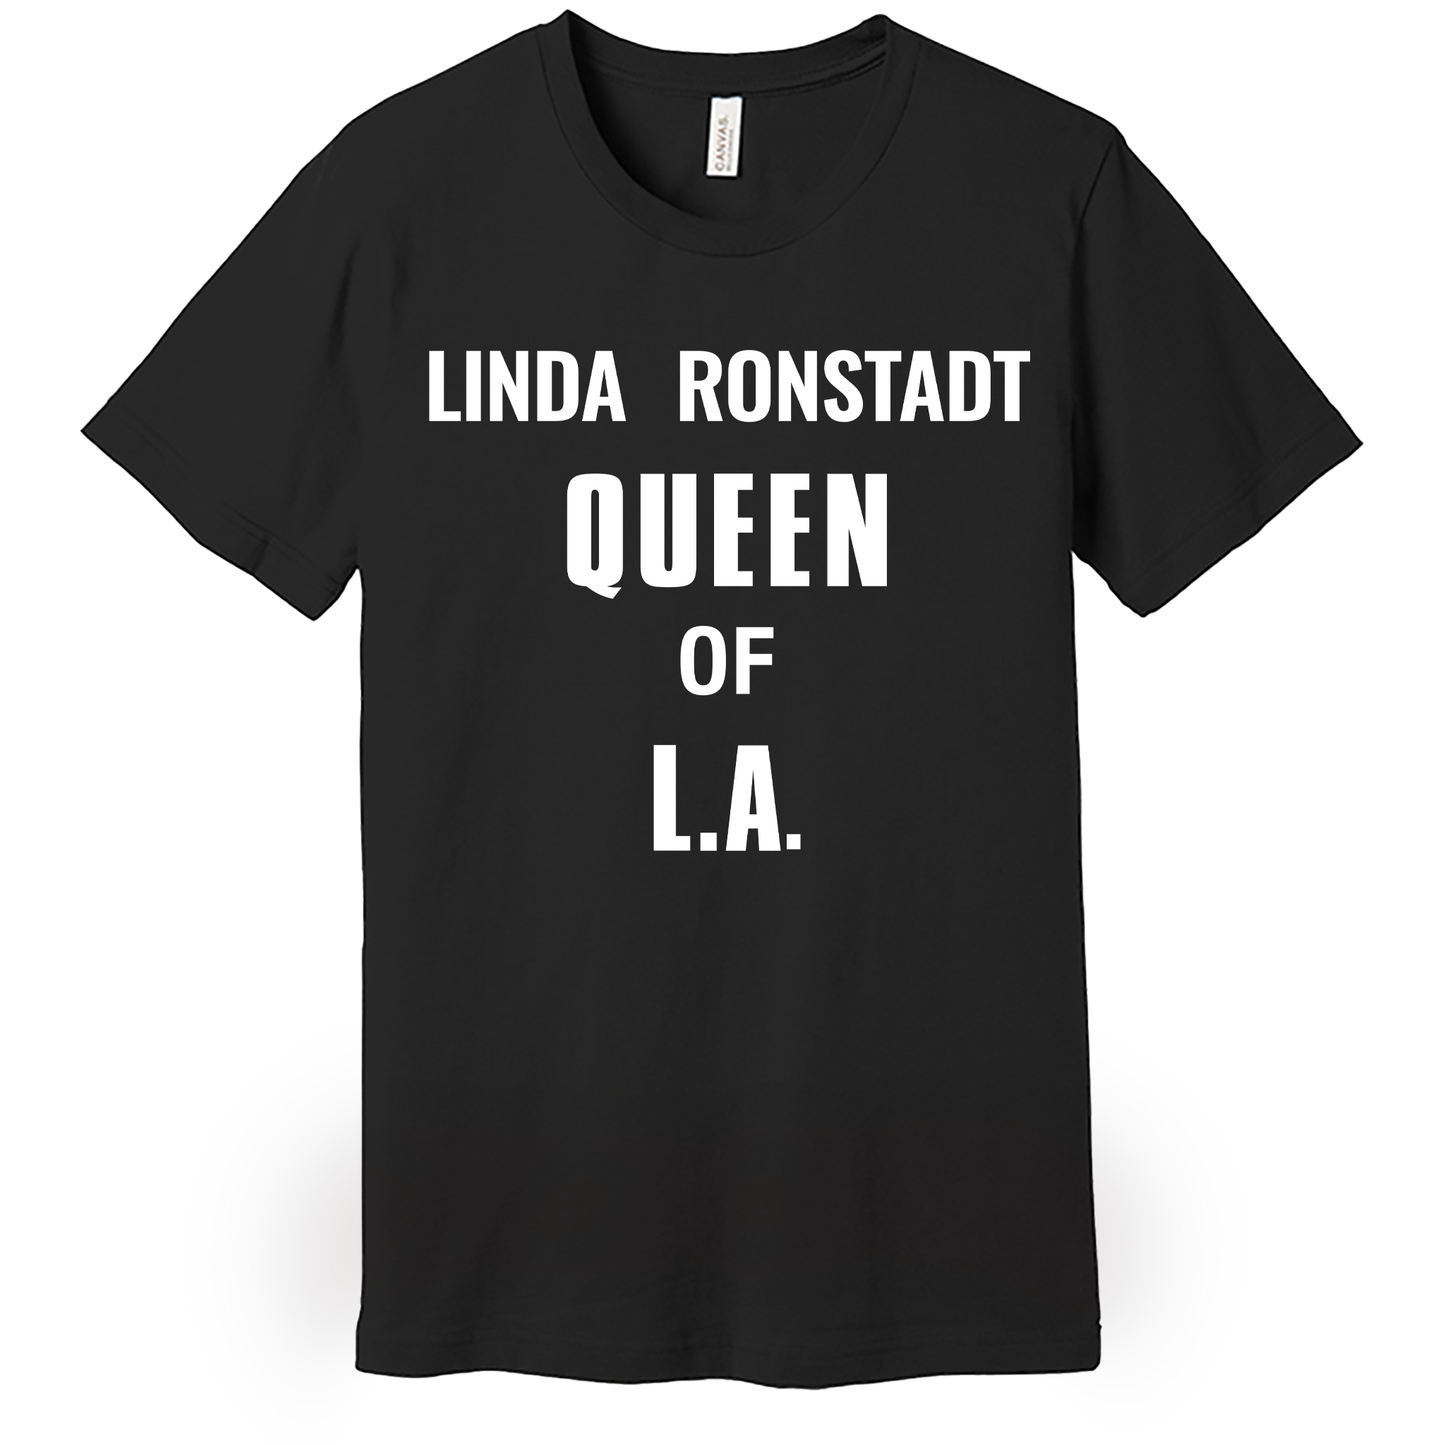 LINDA RONSTADT QUEEN OF L.A. T-SHIRT - Black